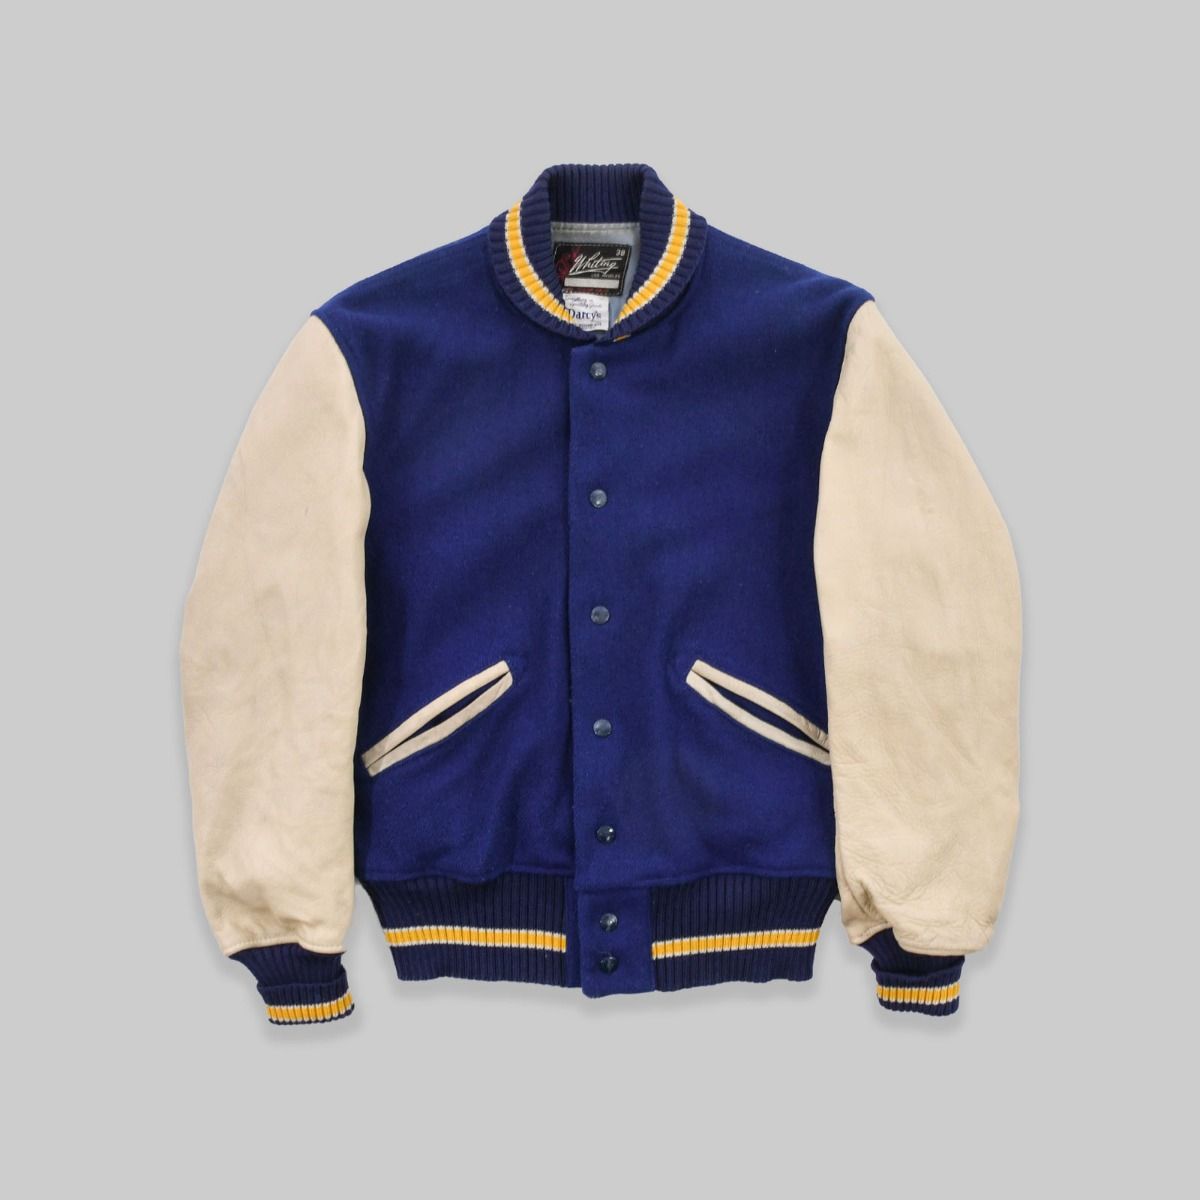 1980s Varsity Jacket